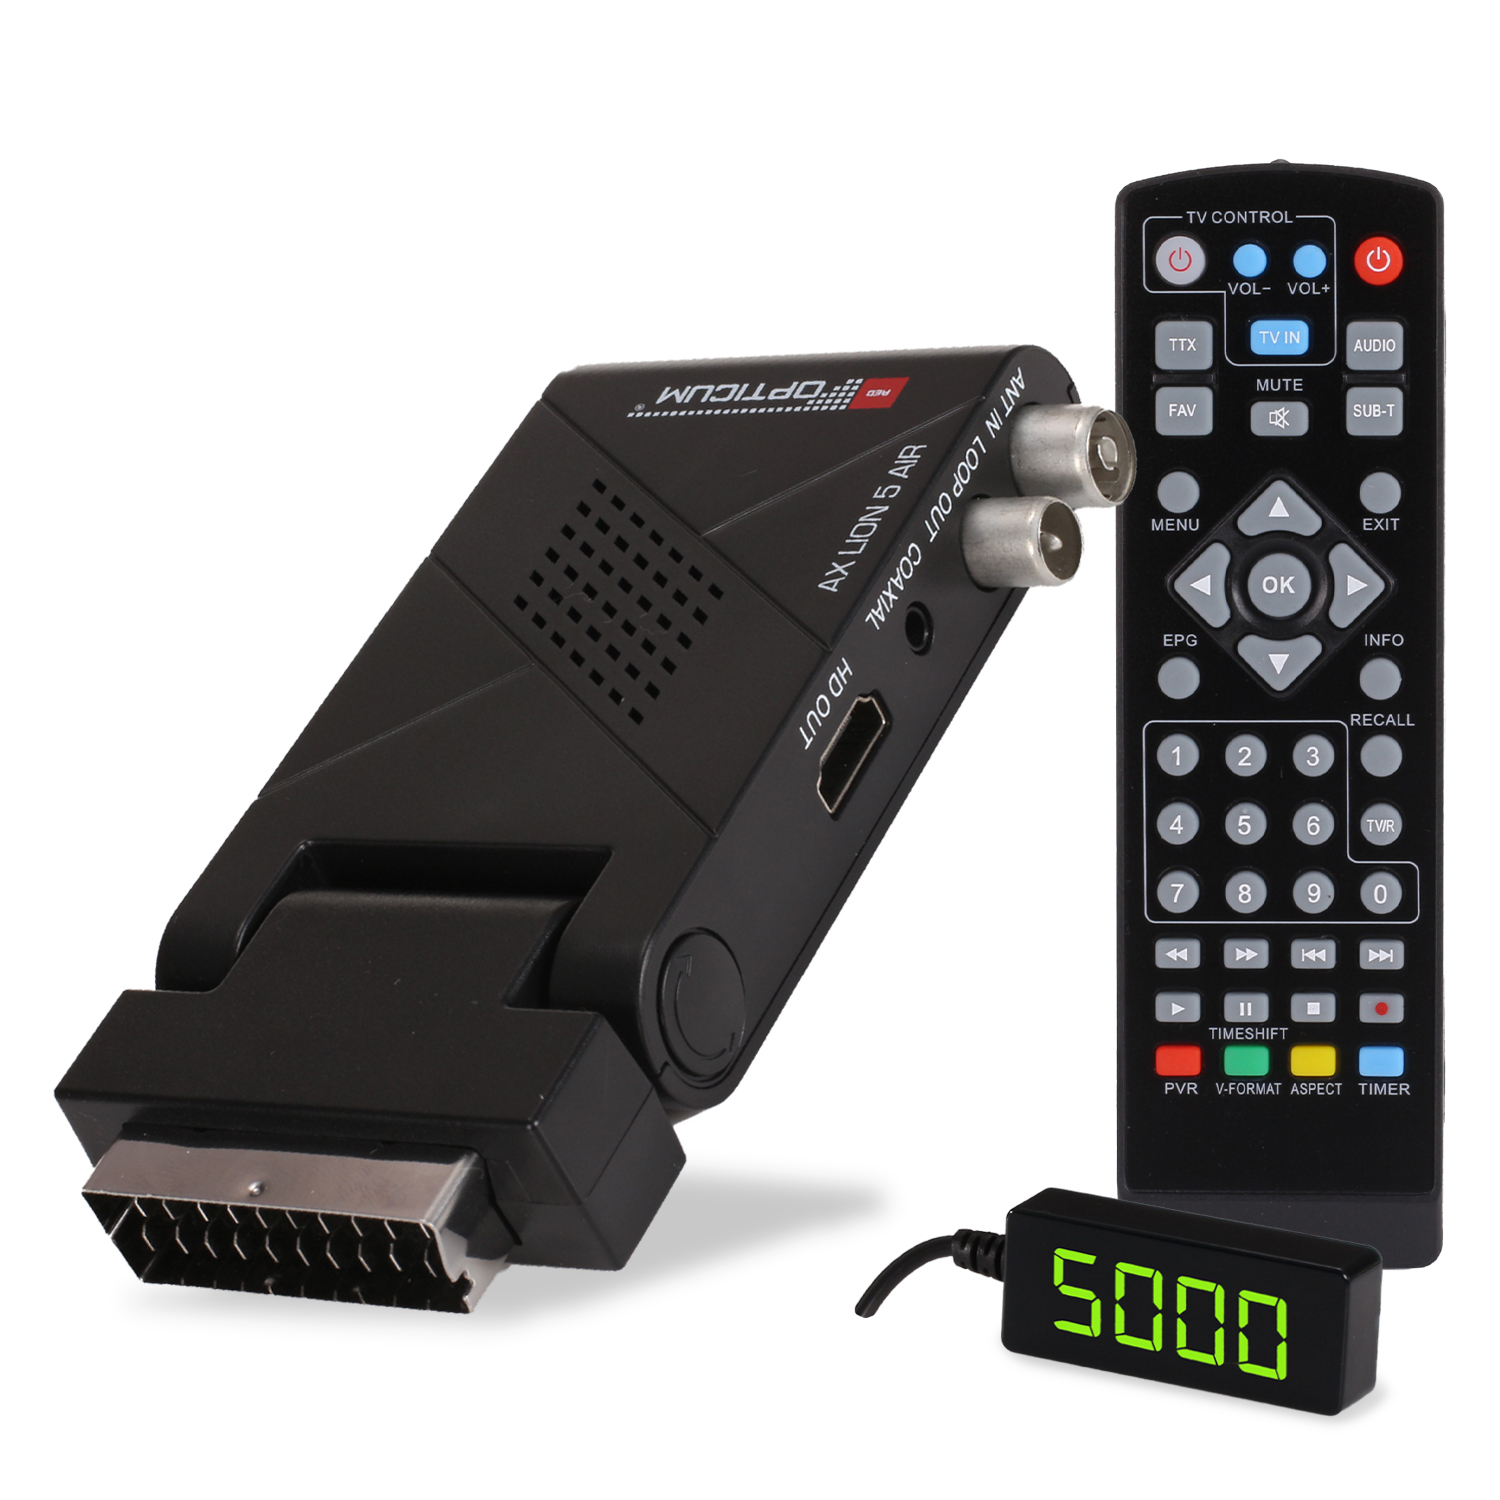 RED OPTICUM (HDTV, HD (H.264), DVB-T2 Aufnahmefunktion (H.265), HD-Receiver PVR-Funktion, DVB-T, AX Receiver Receiver DVB-T2 AIR Lion schwarz) mit DVB-T2 DVB-T2 HD 5 - SCART/ I DVB-T2 PVR HDMI